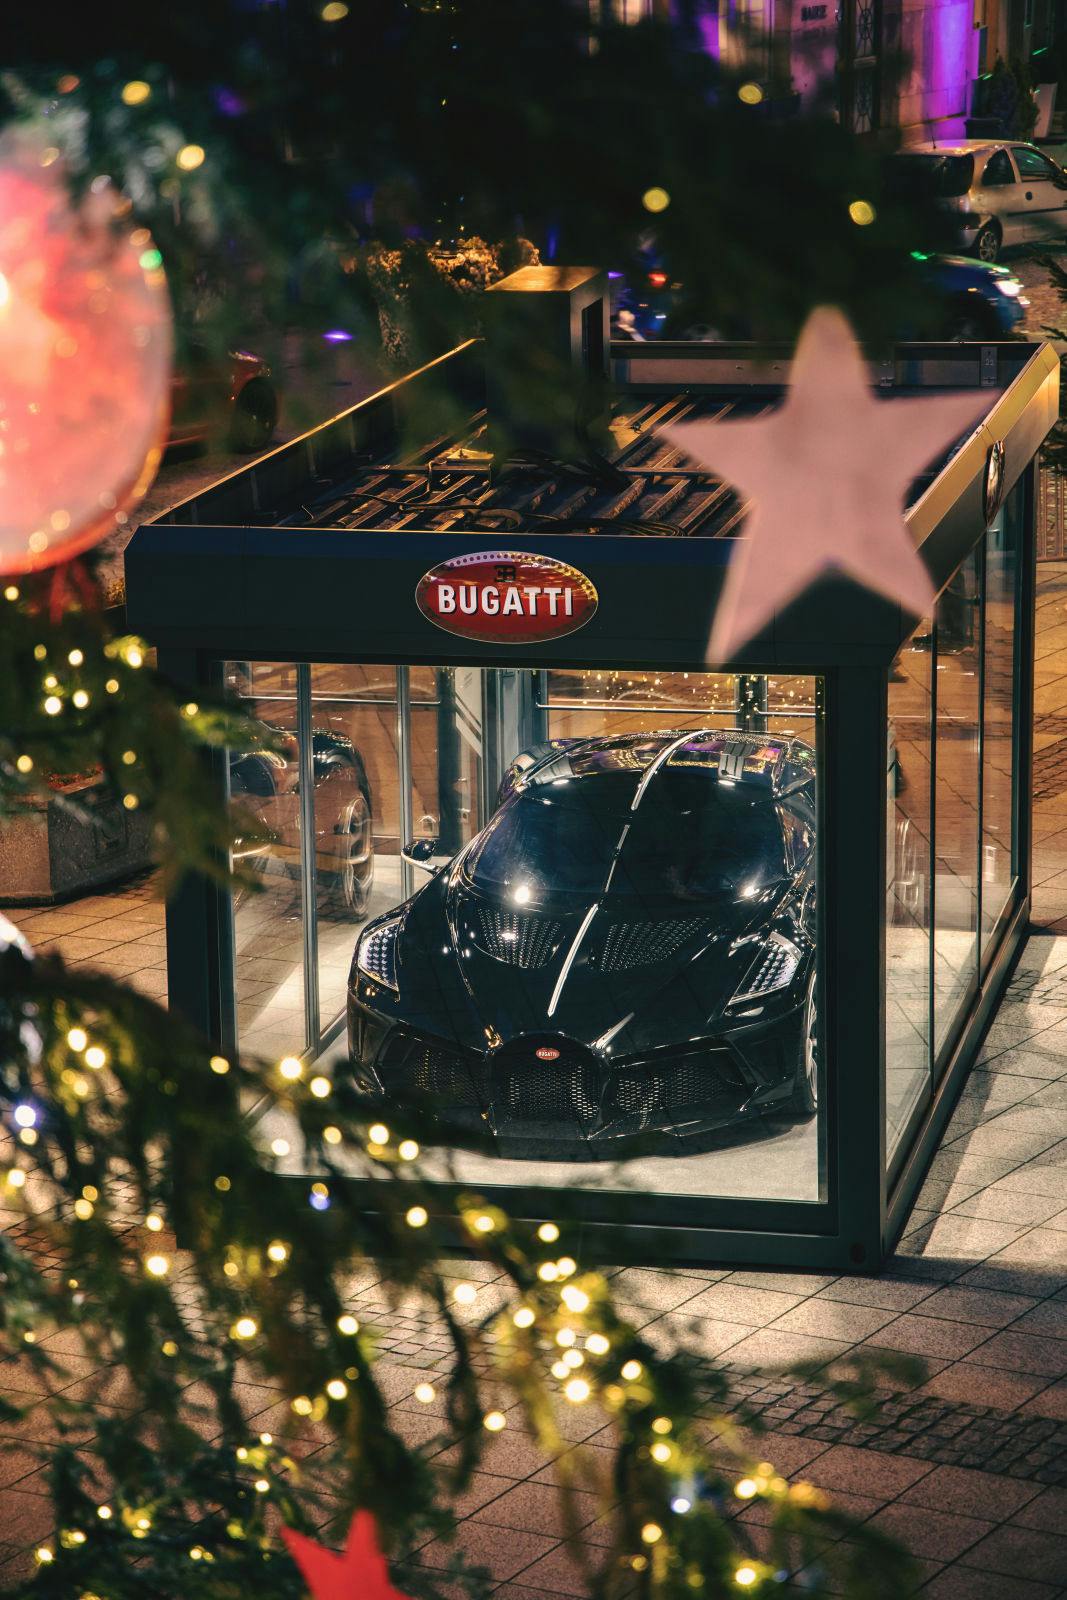 Instead of the Christmas market, this year the Bugatti La Voiture Noire is on exhibit at the Place de l’Hôtel de Ville.